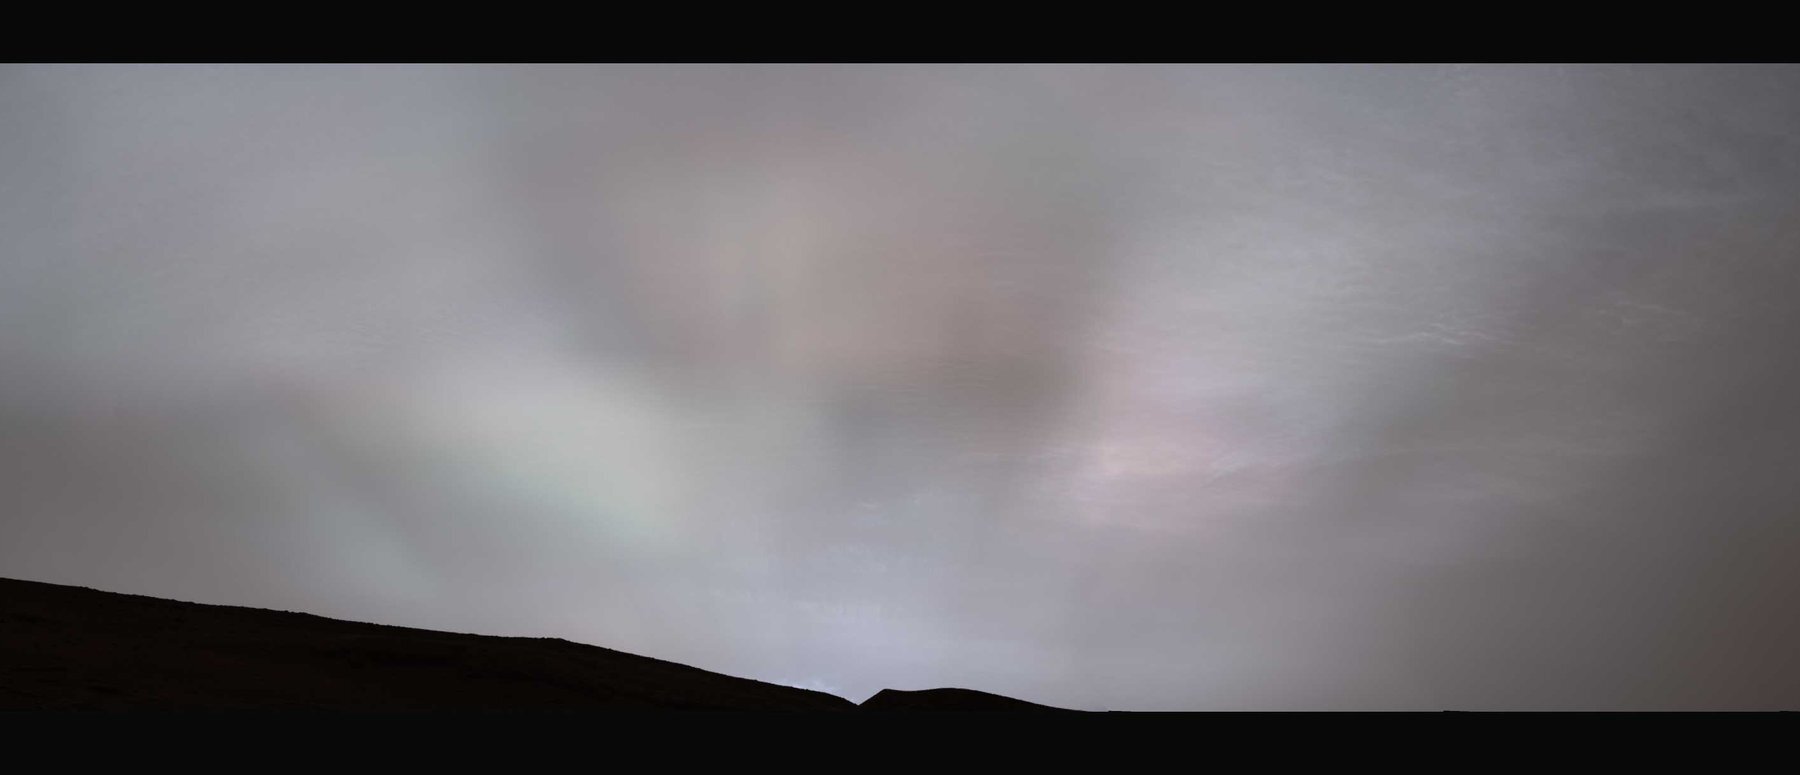 El rover Curiosity Mars de la NASA capturó estos "rayos de sol" brillando a través de las nubes al atardecer del 2 de febrero de 2023, el día 3730 marciano, o sol, de la misión. Era la primera vez que los rayos del sol, también conocidos como rayos crepusculares, se veían con tanta claridad en Marte. Crédito: NASA/JPL-Caltech/MSSS